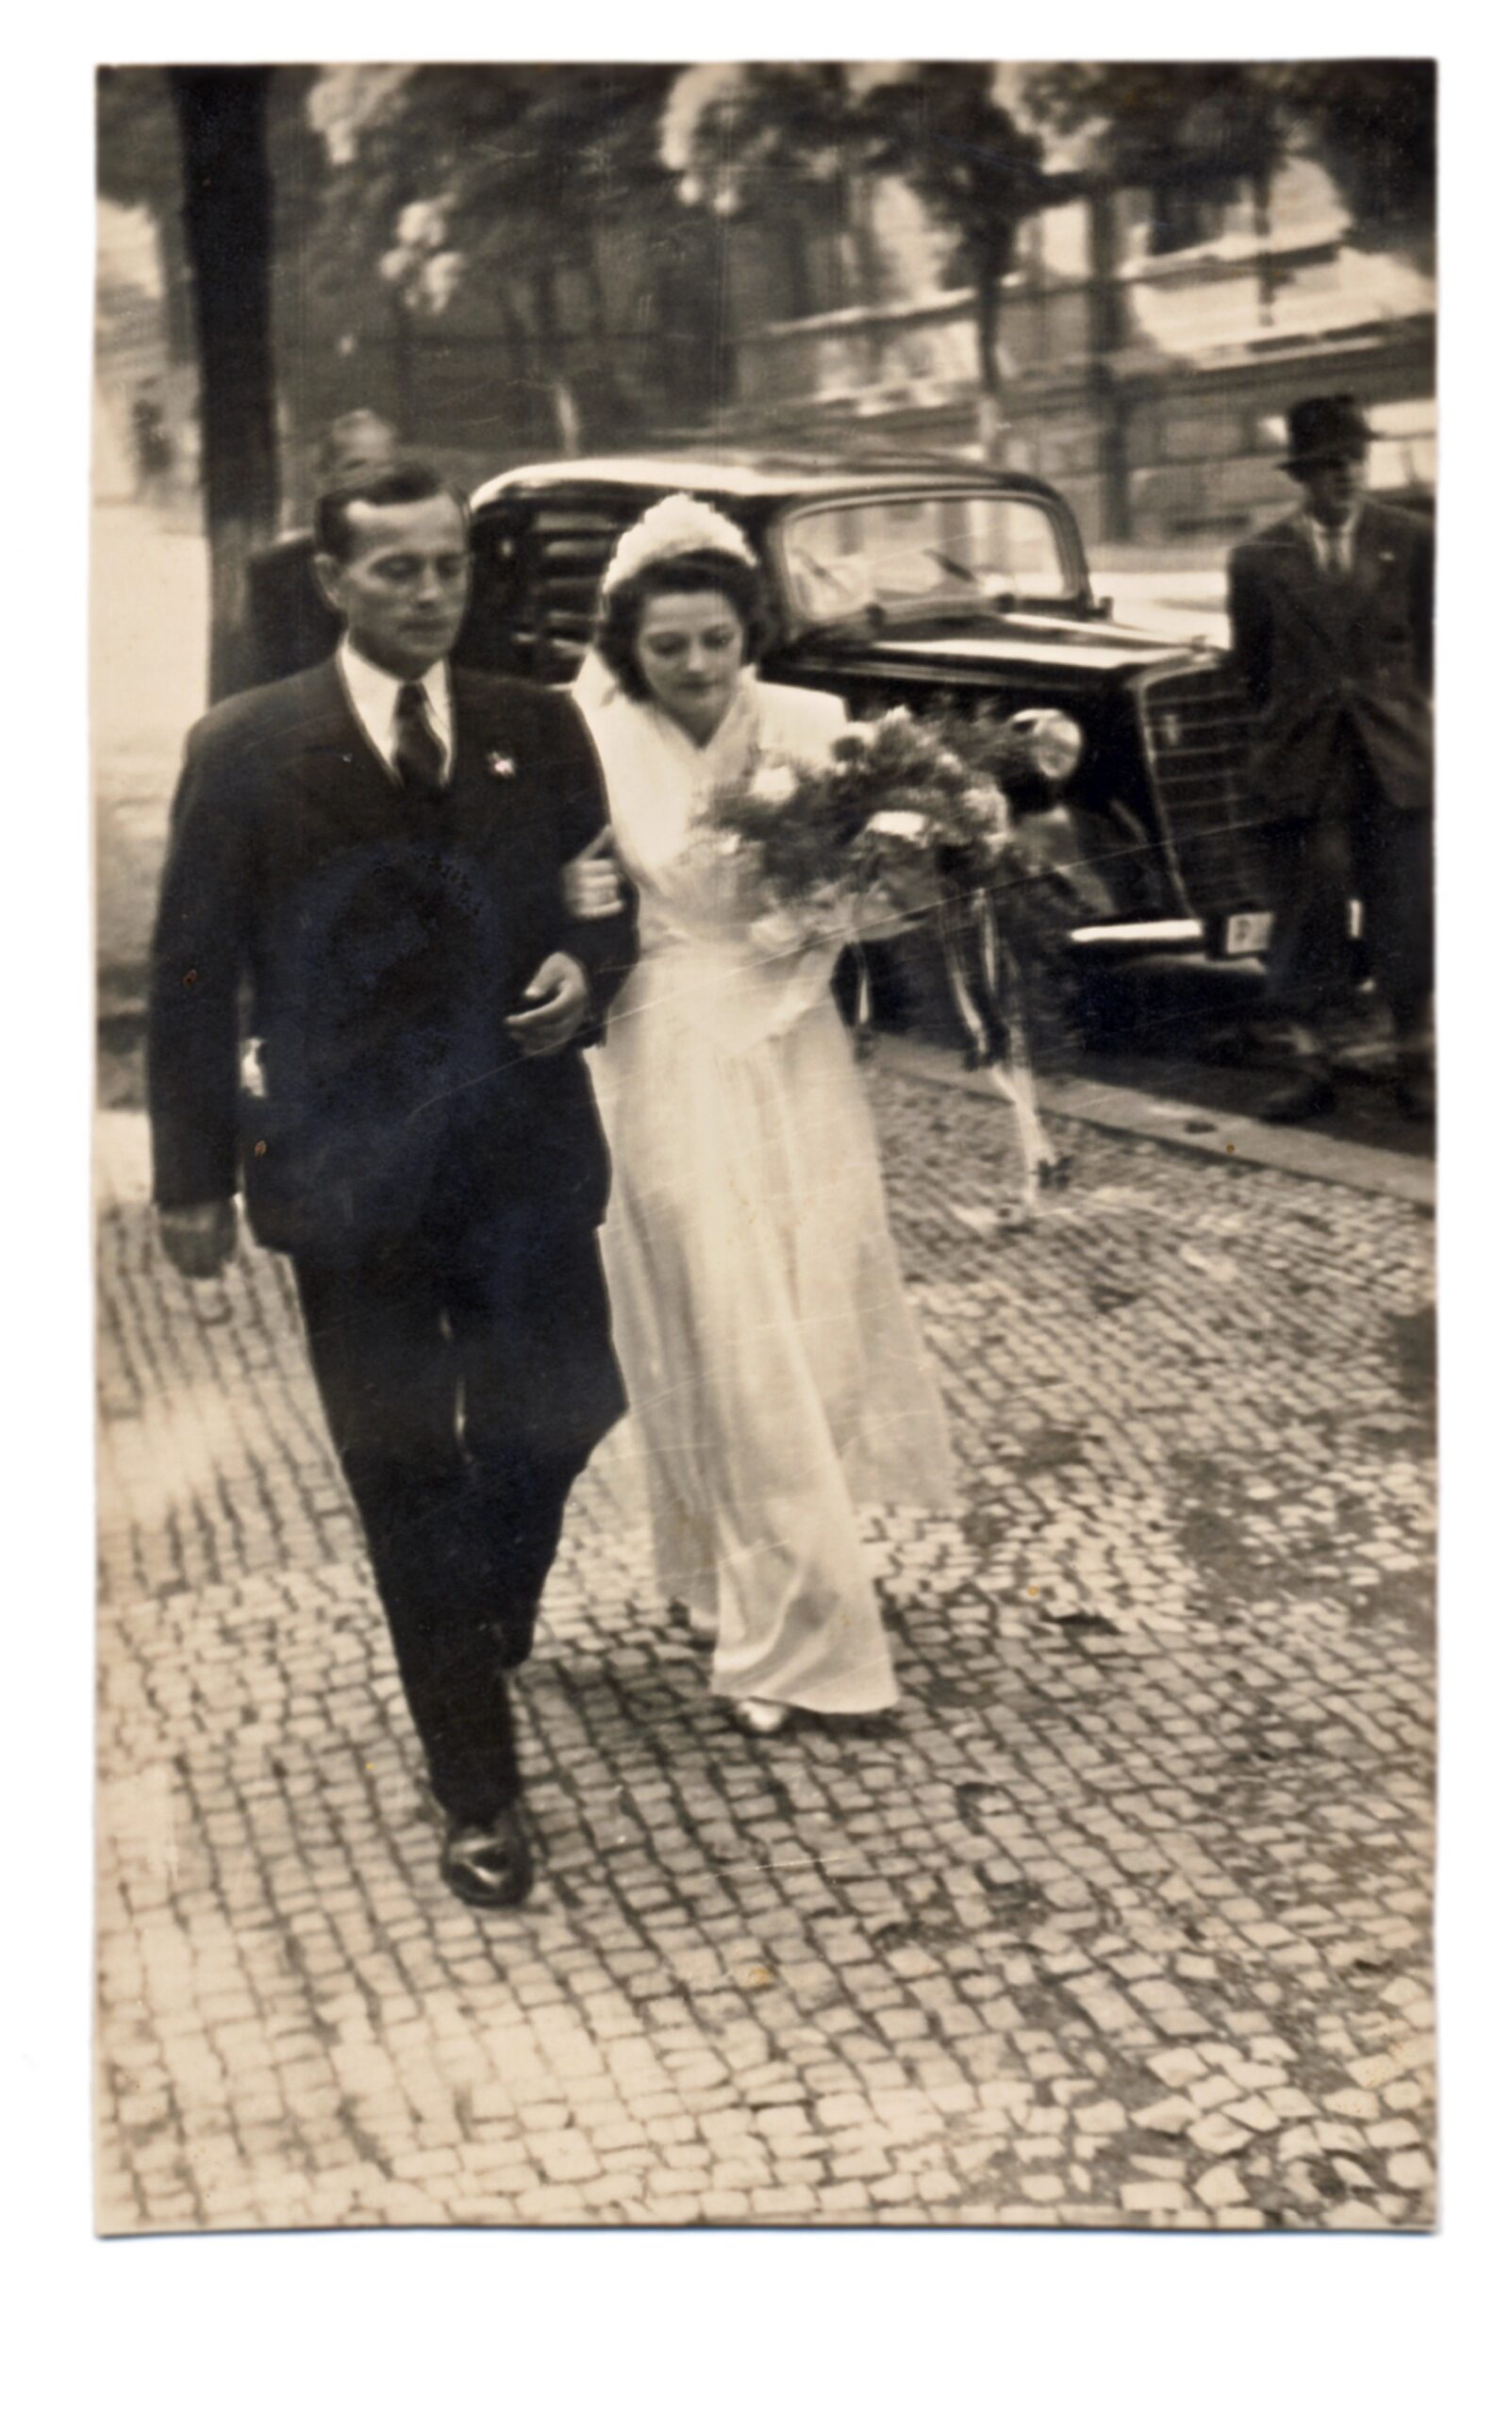 1950's bride walking with groom on street